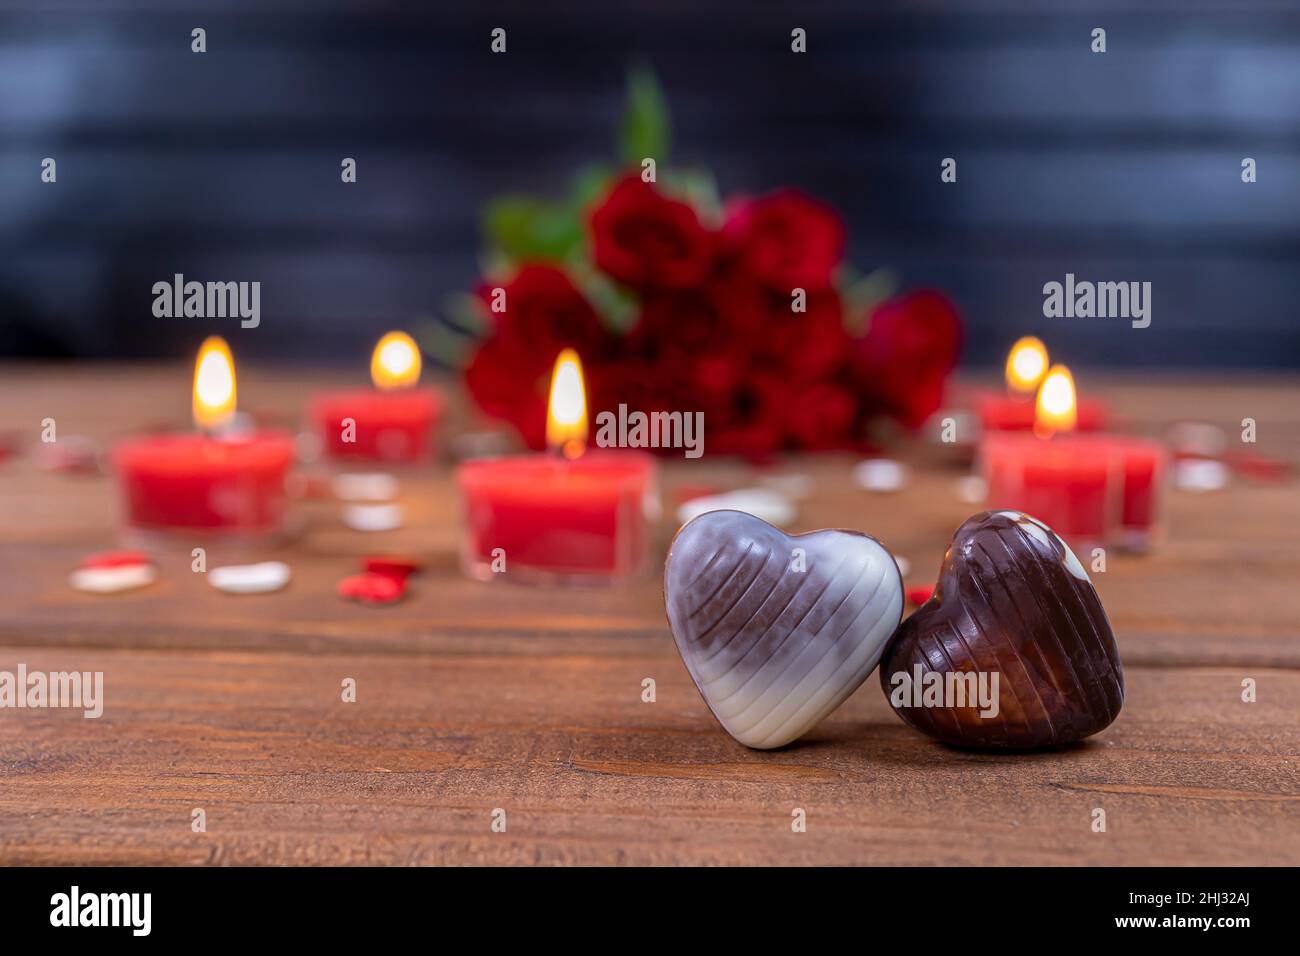 Saint-Valentin concept bonbons au chocolat en forme de coeur et roses rouges avec bougies sur bois.Concept amour et romance. Banque D'Images